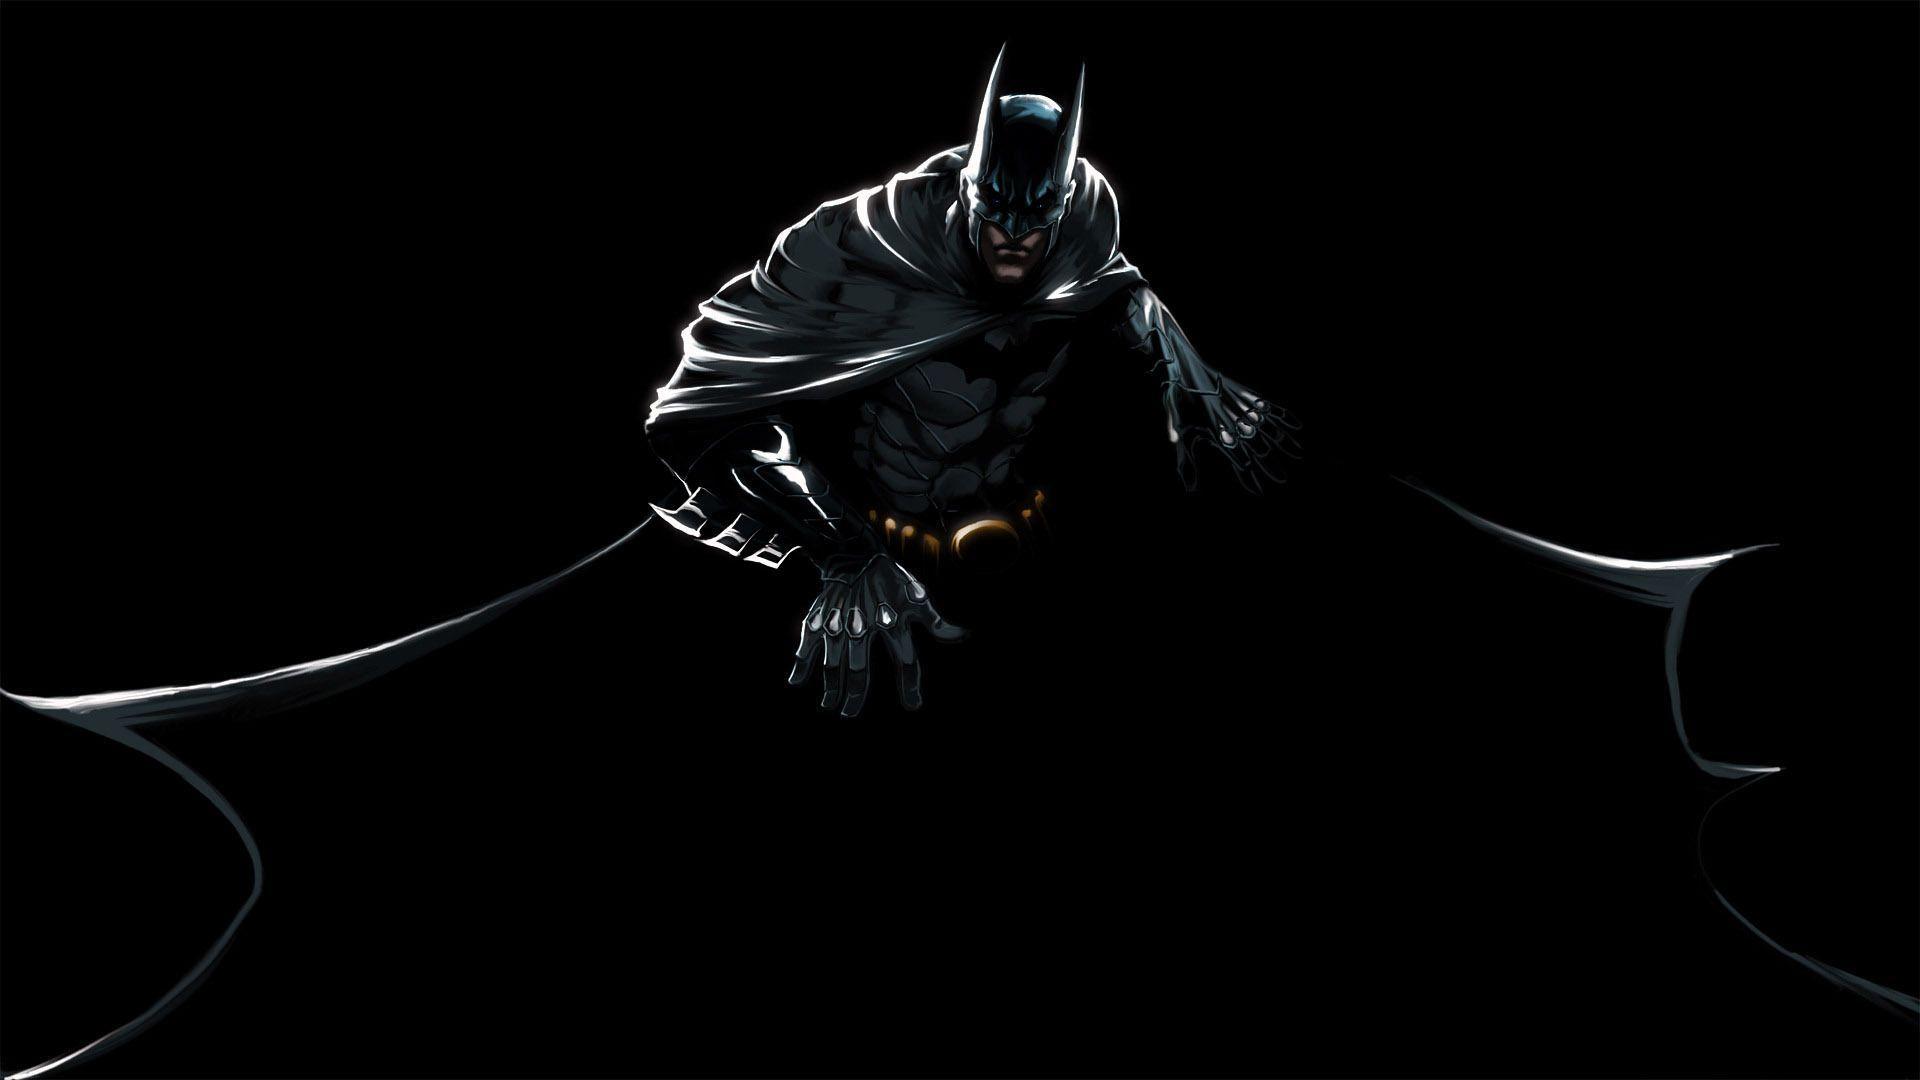 hd wallpapers batman desktop - Wallumi  Batman wallpaper, Nightwing  wallpaper, Logo wallpaper hd